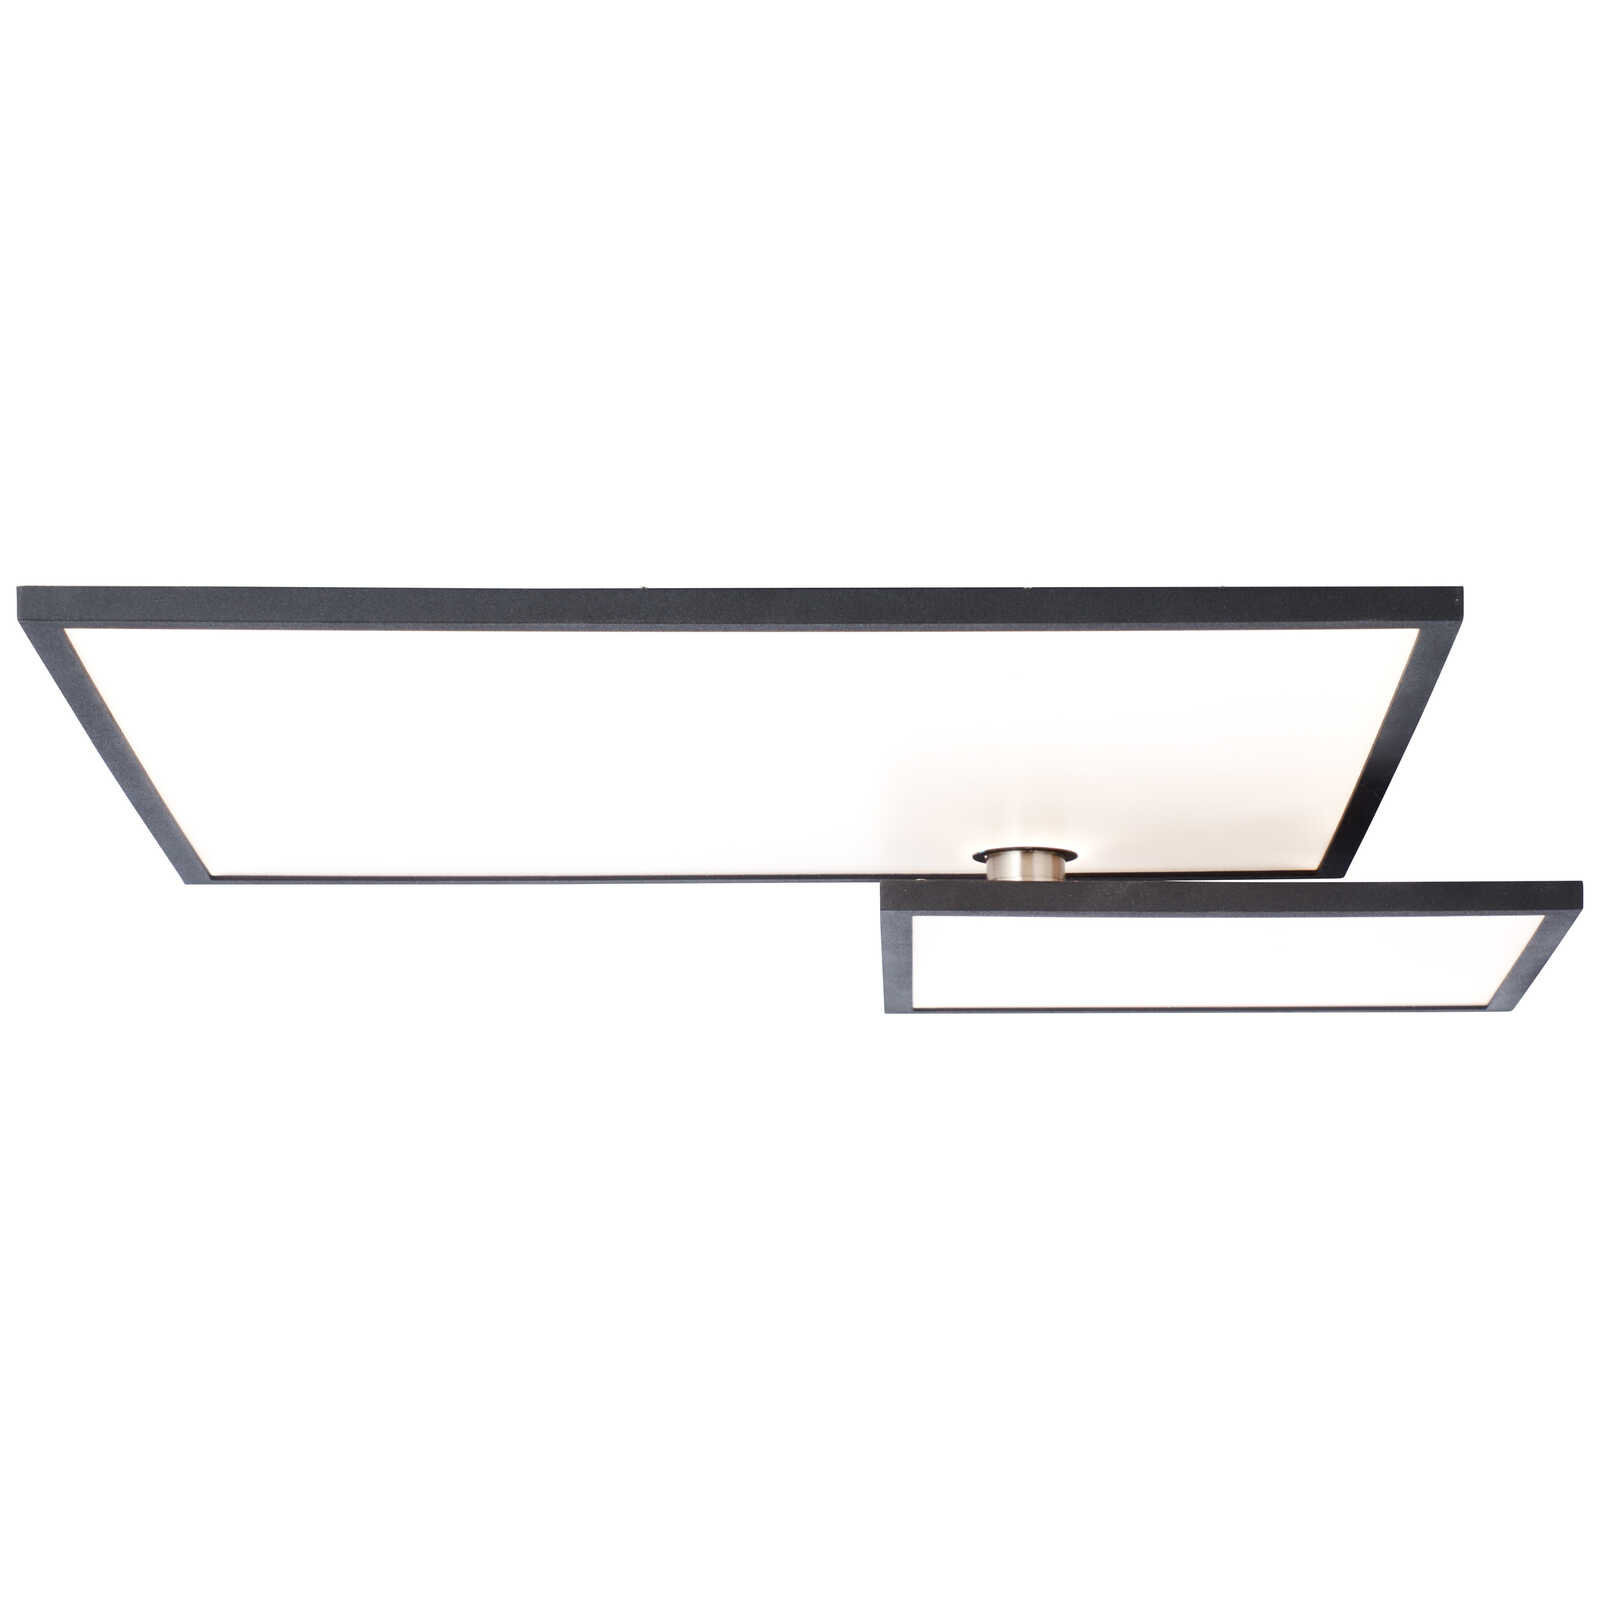             Metal ceiling light - Benno 1 - Black
        